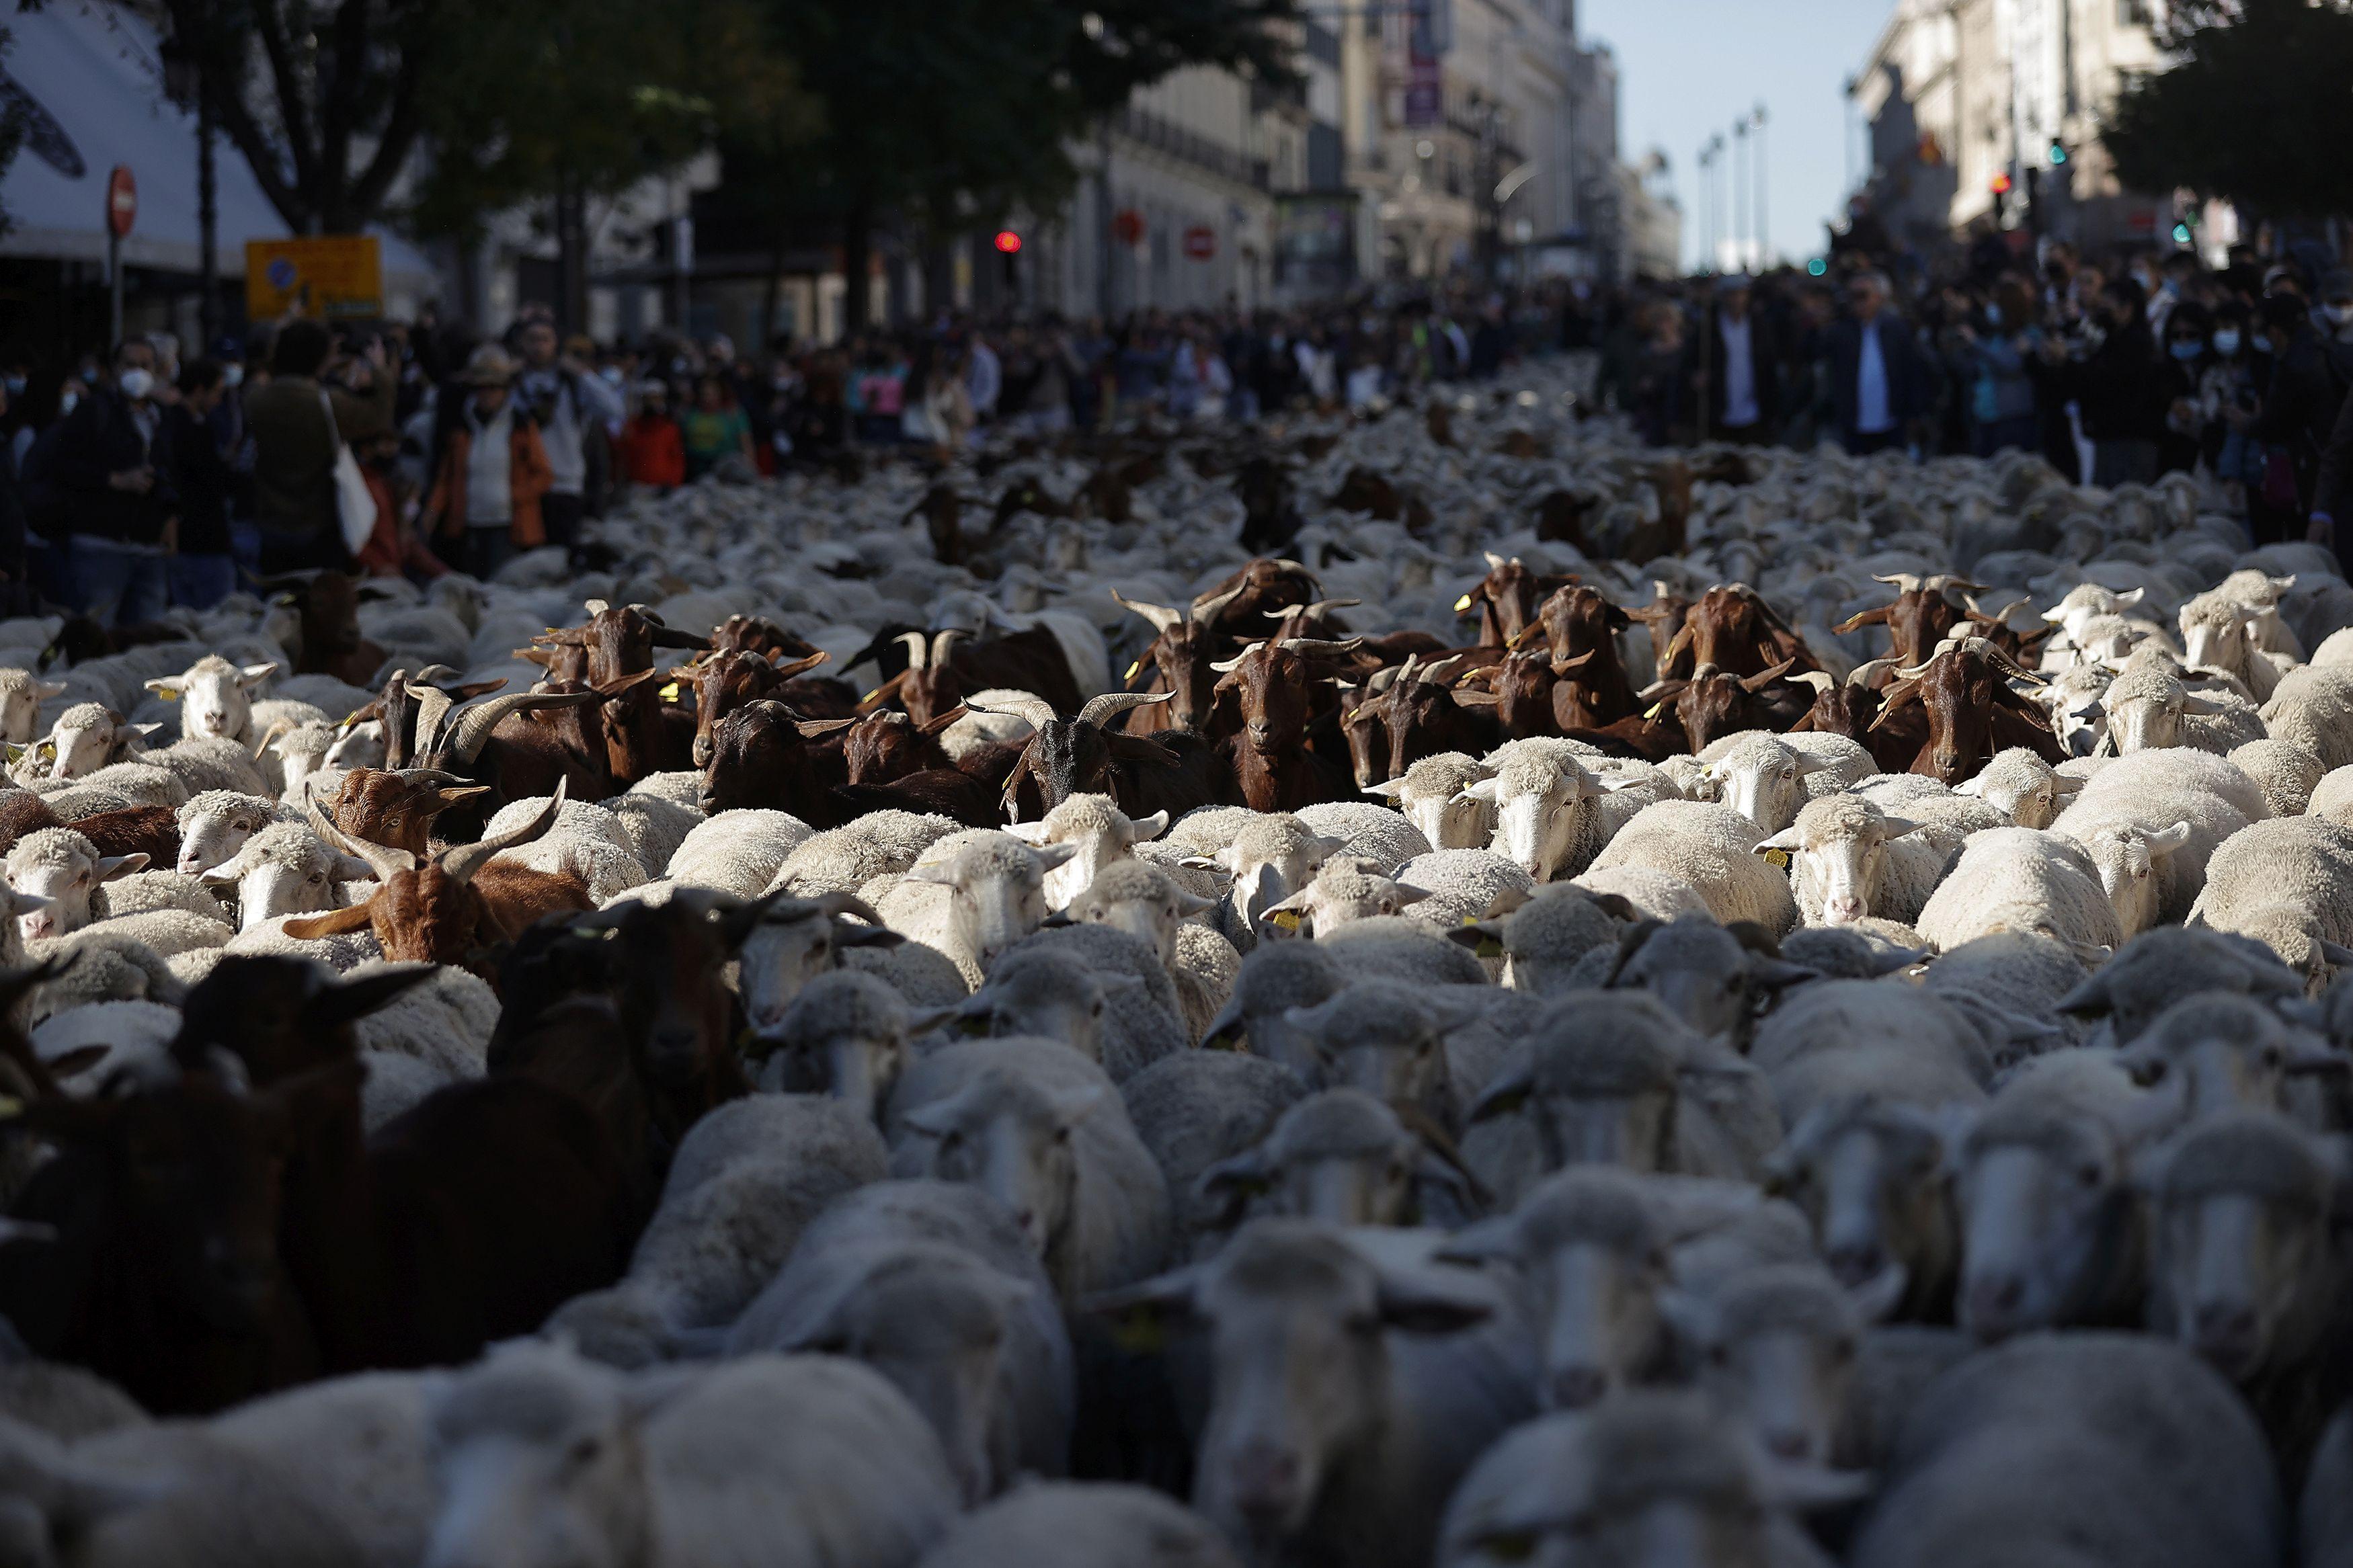 Više od 1.000 ovaca i koza tokom "Trashumancije" prošlo je ulicama Madrida - Avaz